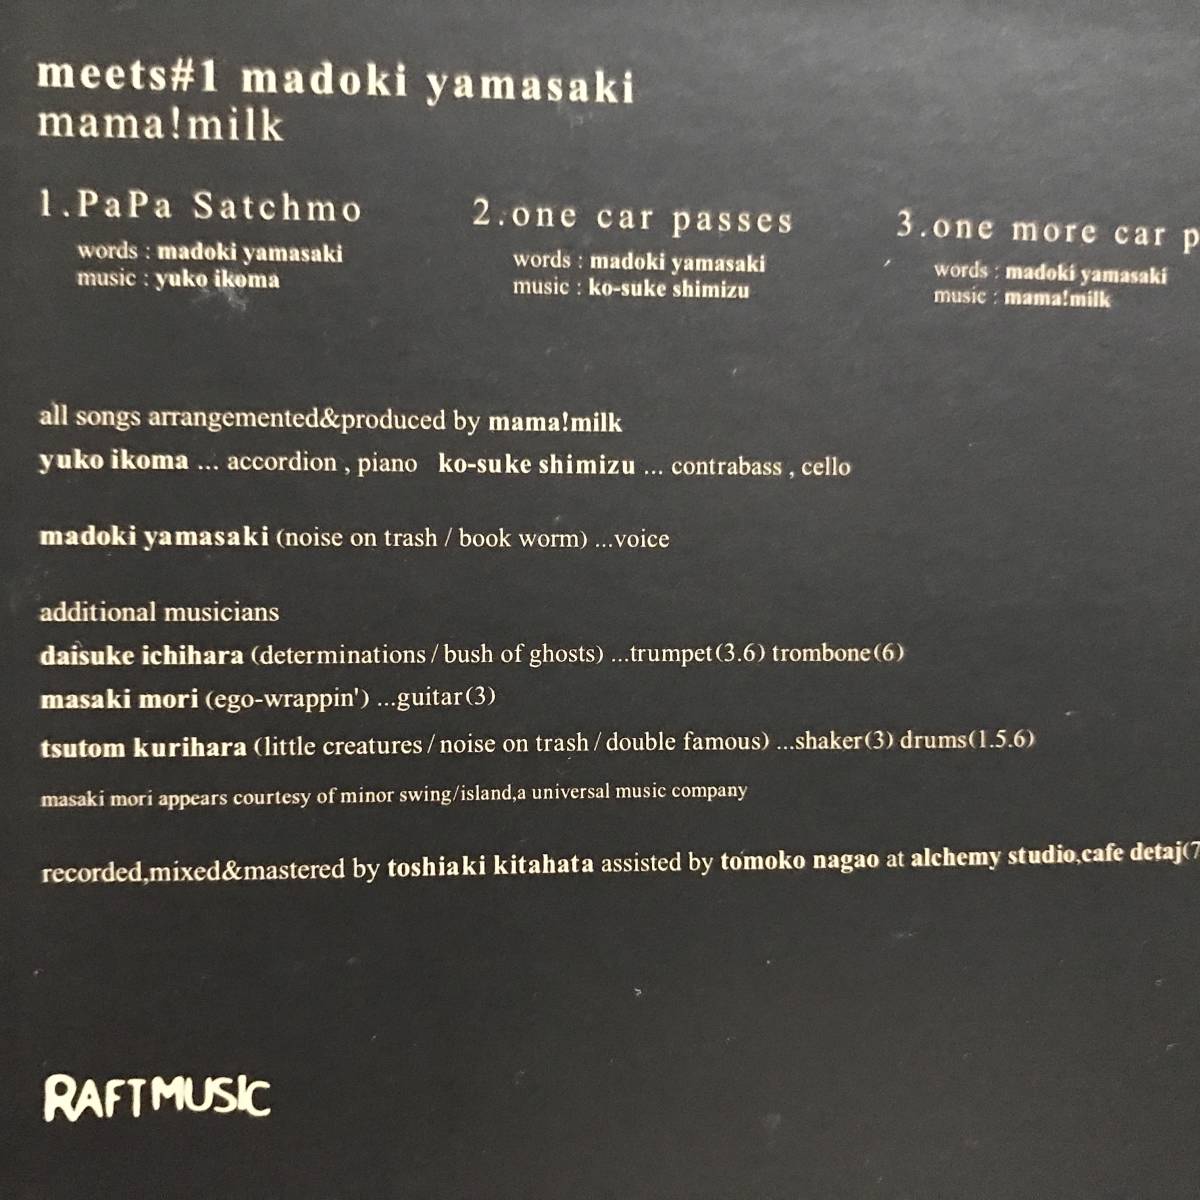 中古CD ママ・ミルク mama! milk meets#1 madoki yamasaki 山崎円城 Papa Satchmo アコースティック・ダーク・グルーヴ